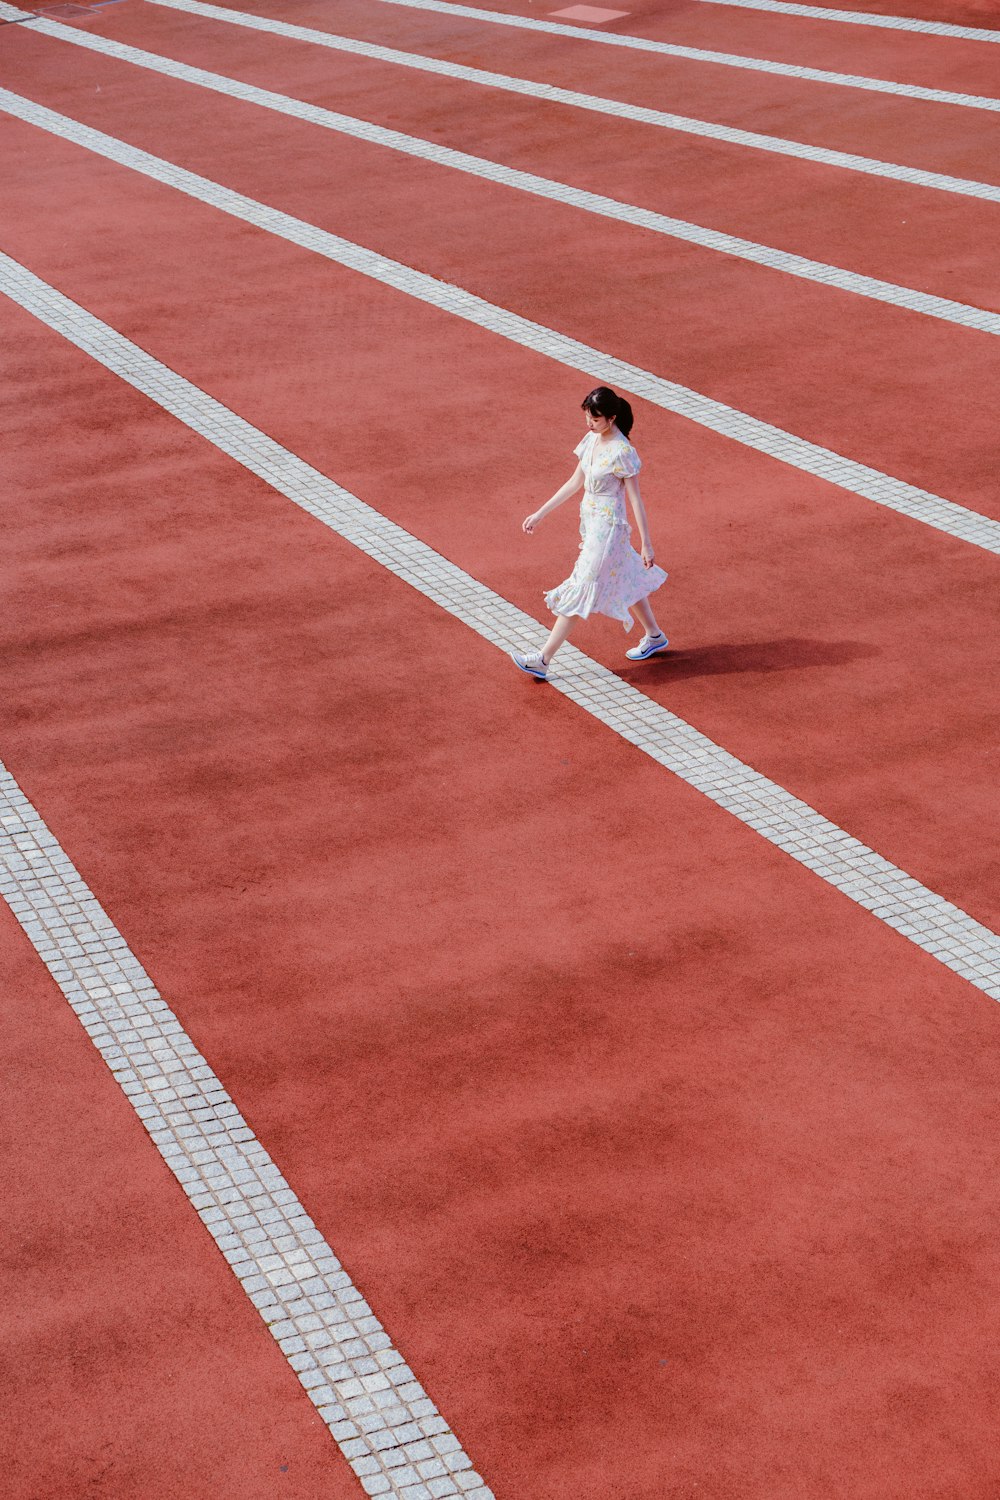 흰 드레스를 입은 여자가 육상 경기를 걷고 있습니다.